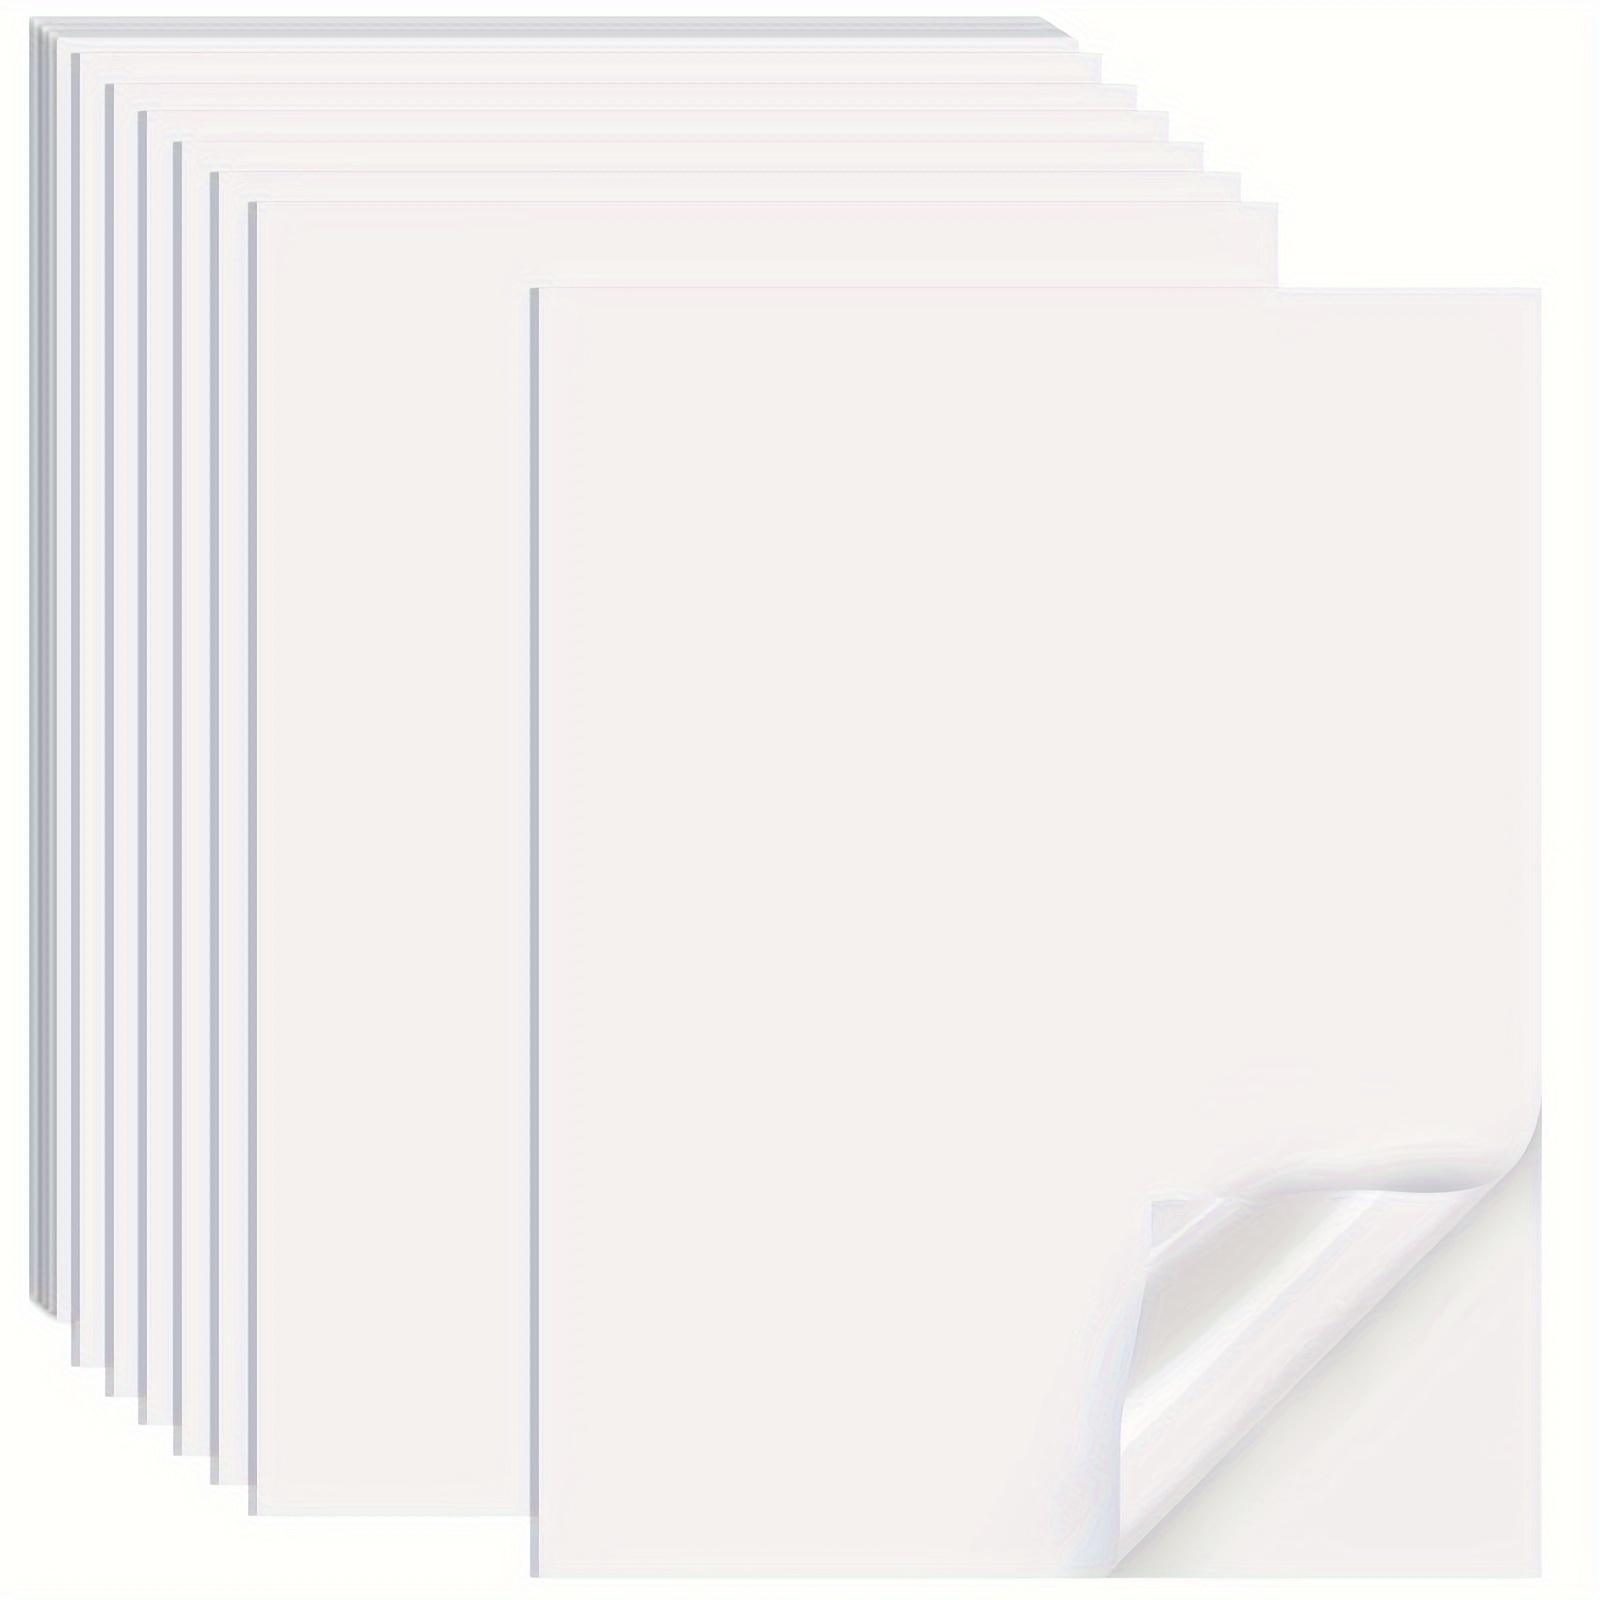 30枚の8.3 X 11.7インチの印刷可能なビニールステッカー用紙 - マットホワイト - ステッカーラベル -  DIYプロジェクト用の標準レターサイズ